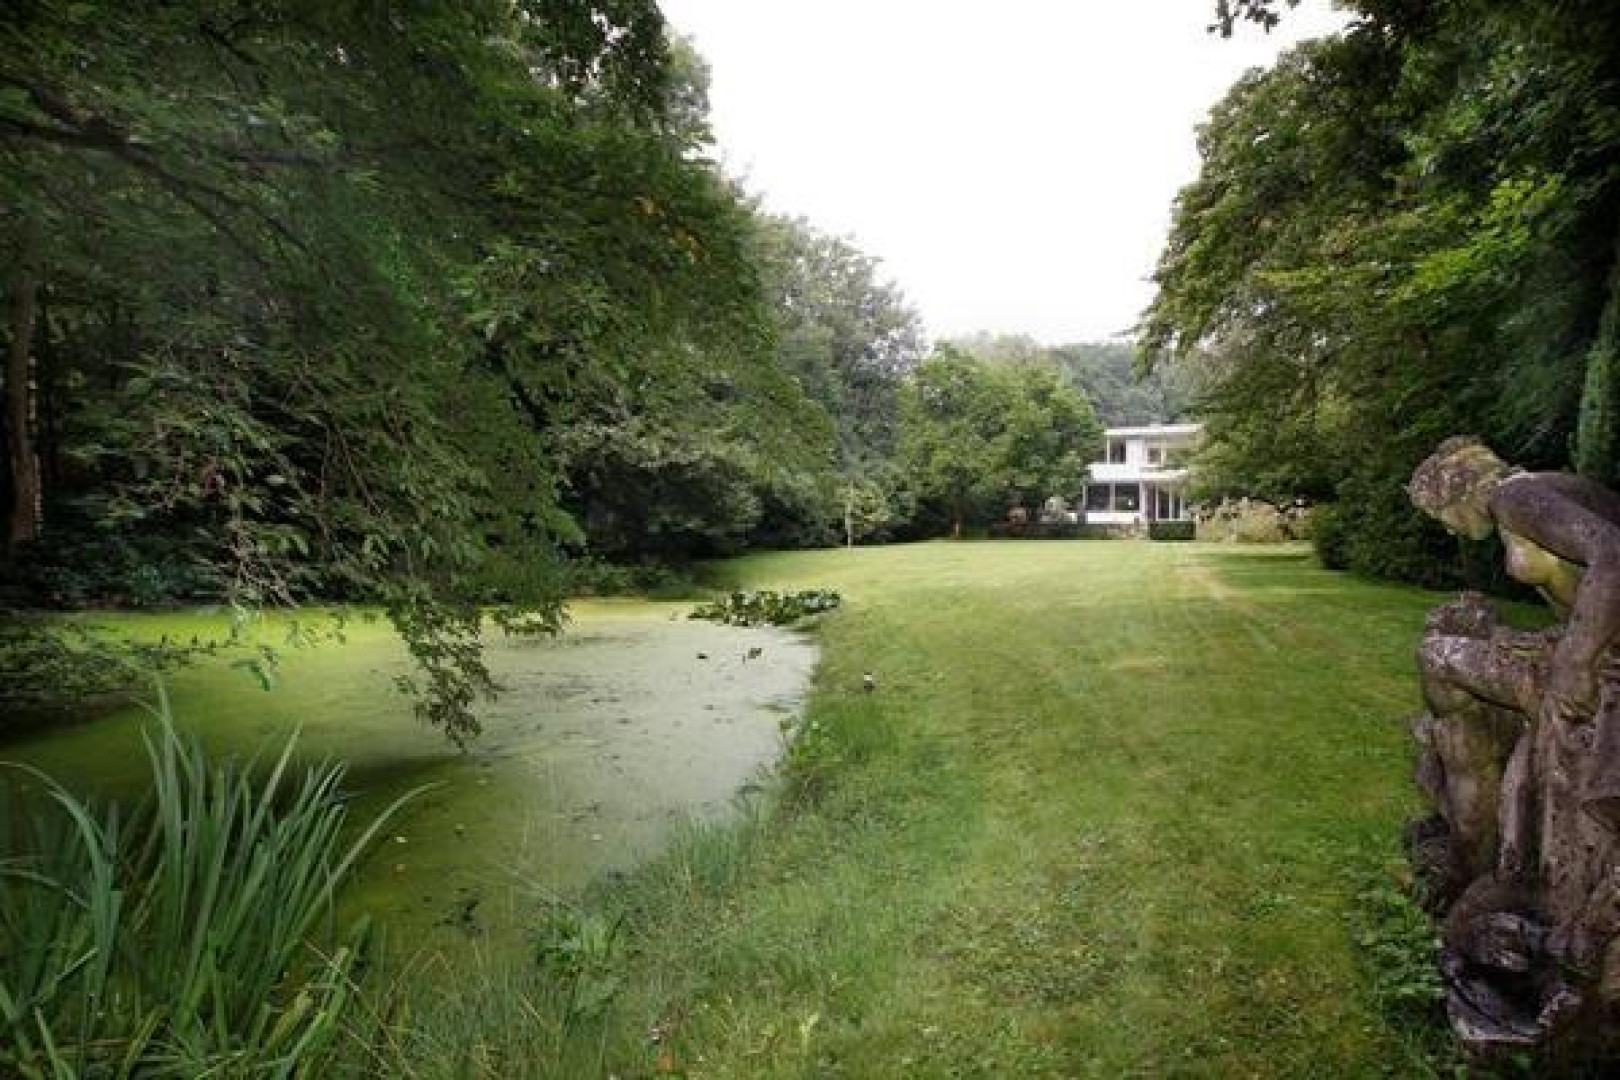 Wassenaarse villa van Neelie Smit Kroes eindelijk na jaren verkocht. Zie foto's 1